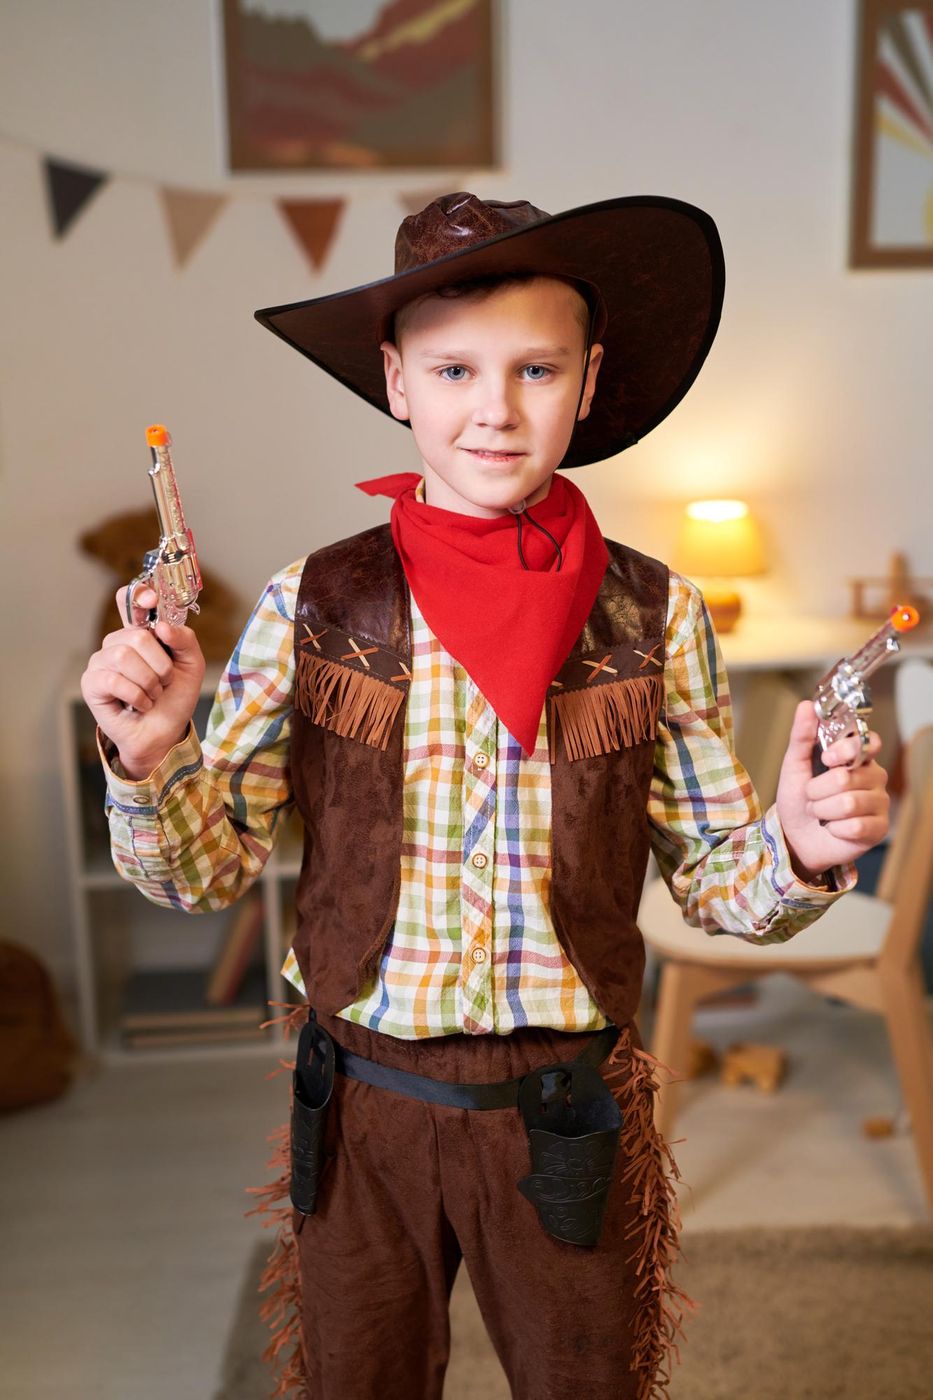 Brauner Sheriff Cowboy Hut für Kinder